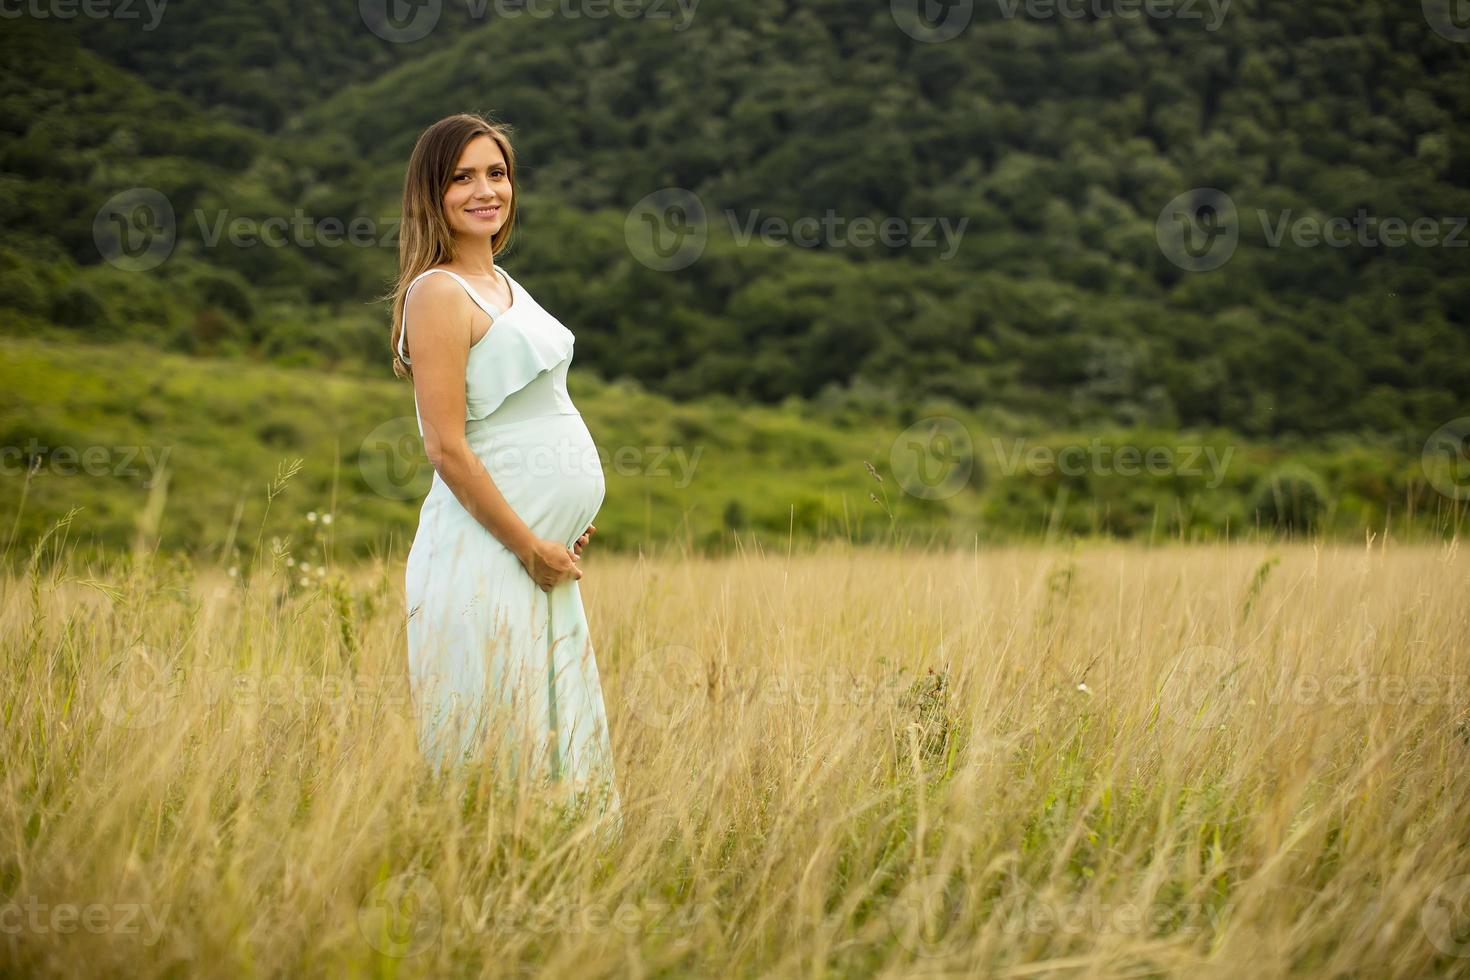 jonge zwangere vrouw ontspannen buiten in de natuur foto